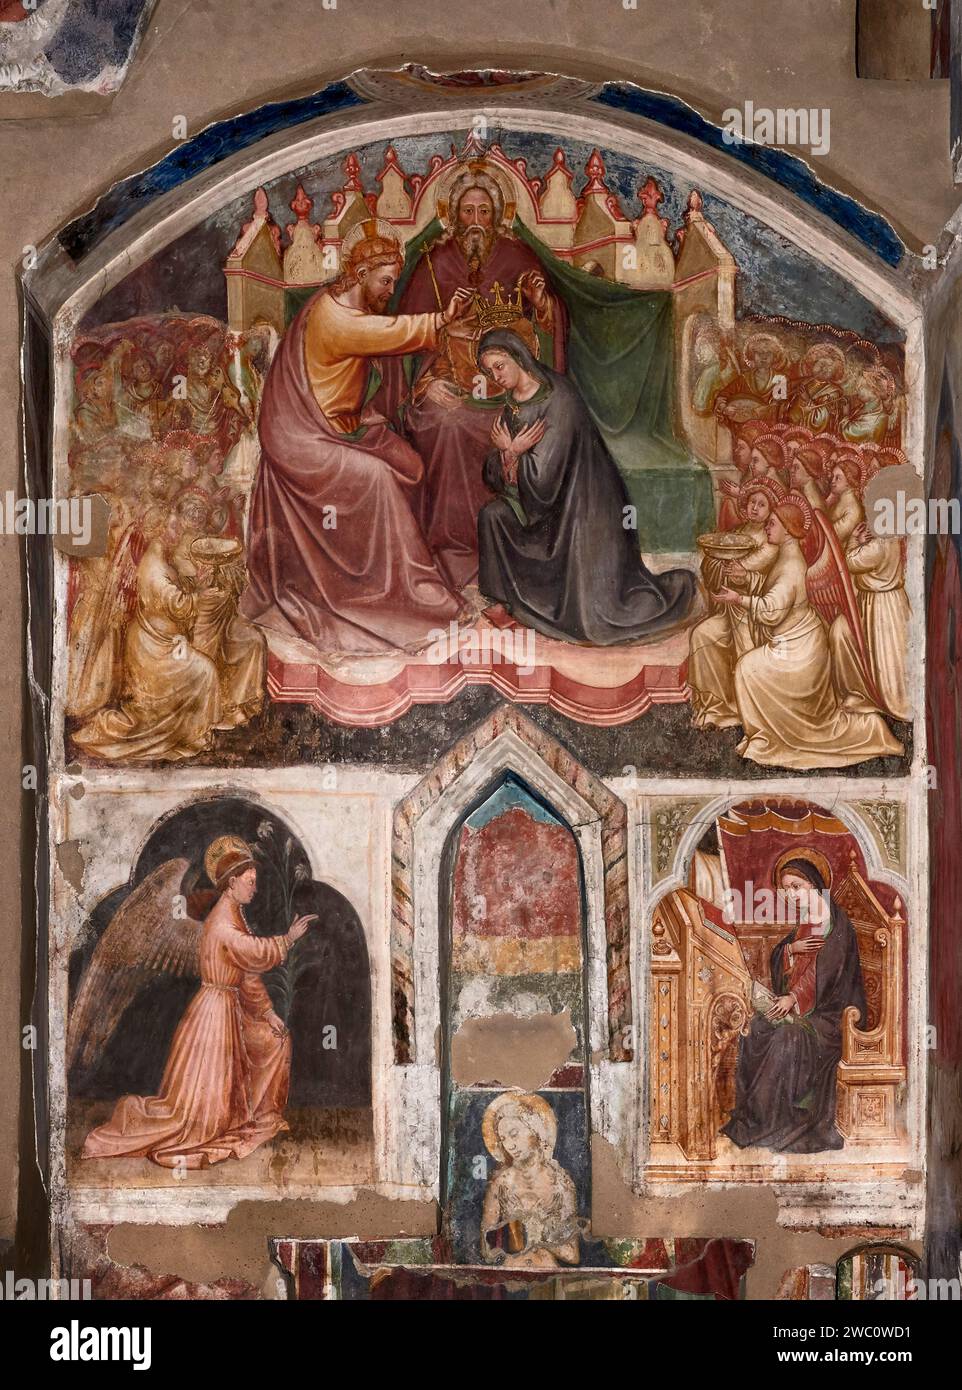 Incoronazione della Vergine e Annunciazione - affresco - Martino da Verona - XIV secolo - Verona, chiesa di S. Stefano Banque D'Images